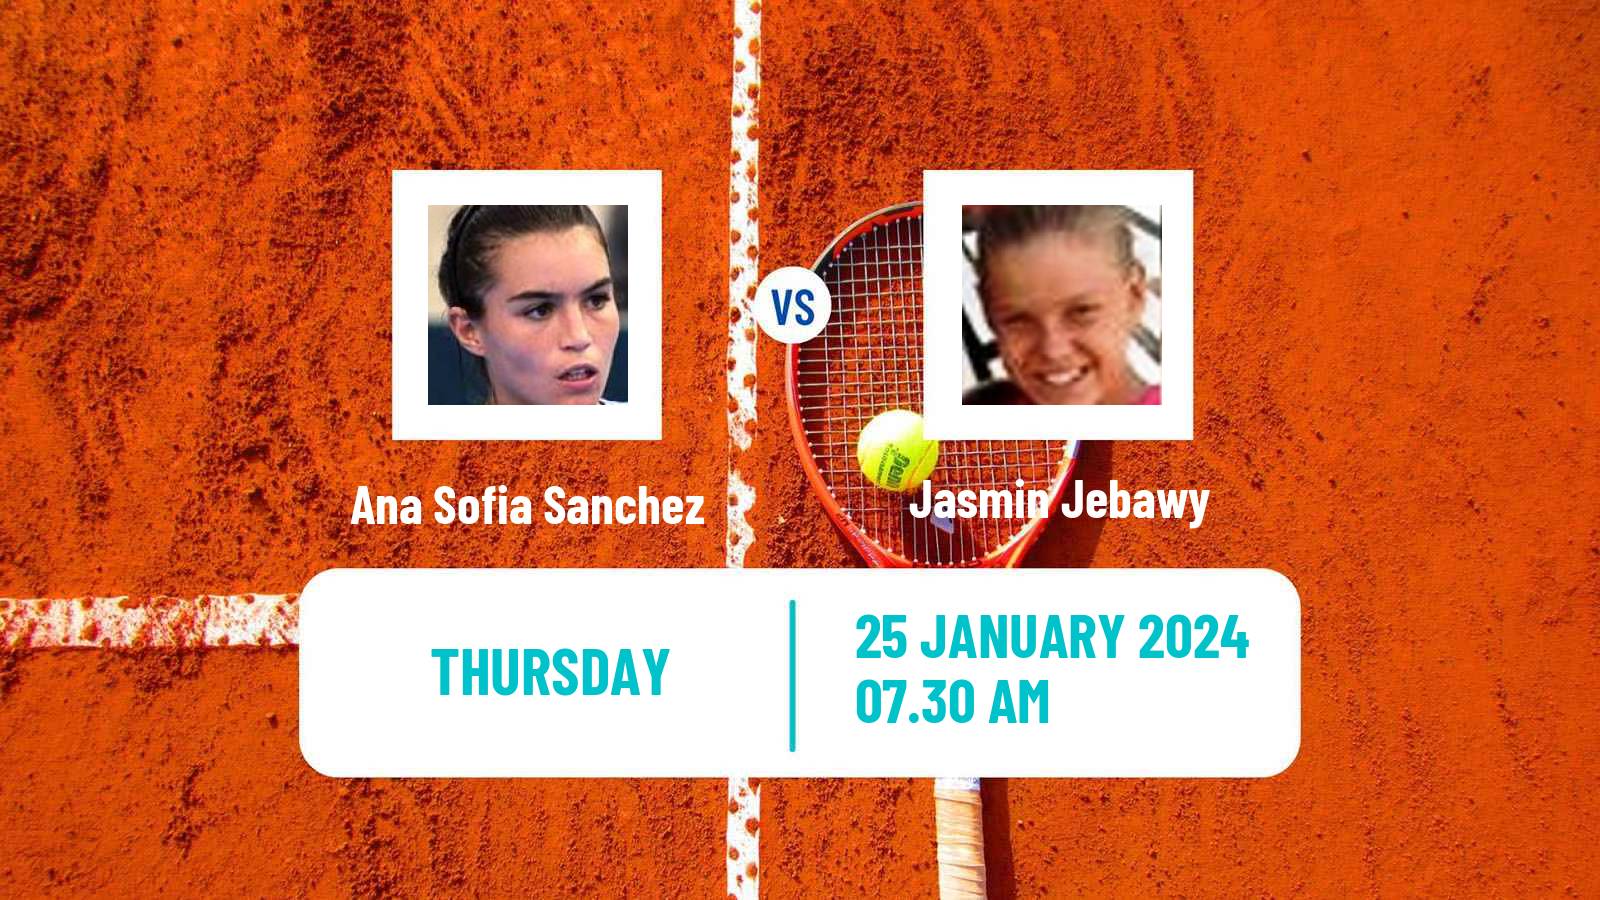 Tennis ITF W35 Buenos Aires 2 Women Ana Sofia Sanchez - Jasmin Jebawy